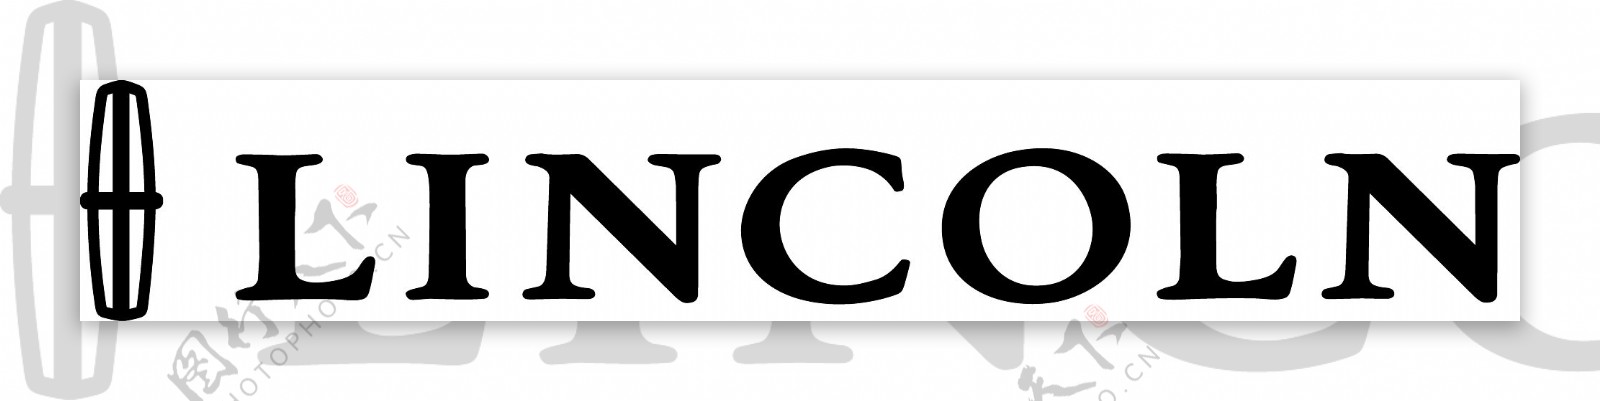 林肯汽车logo2